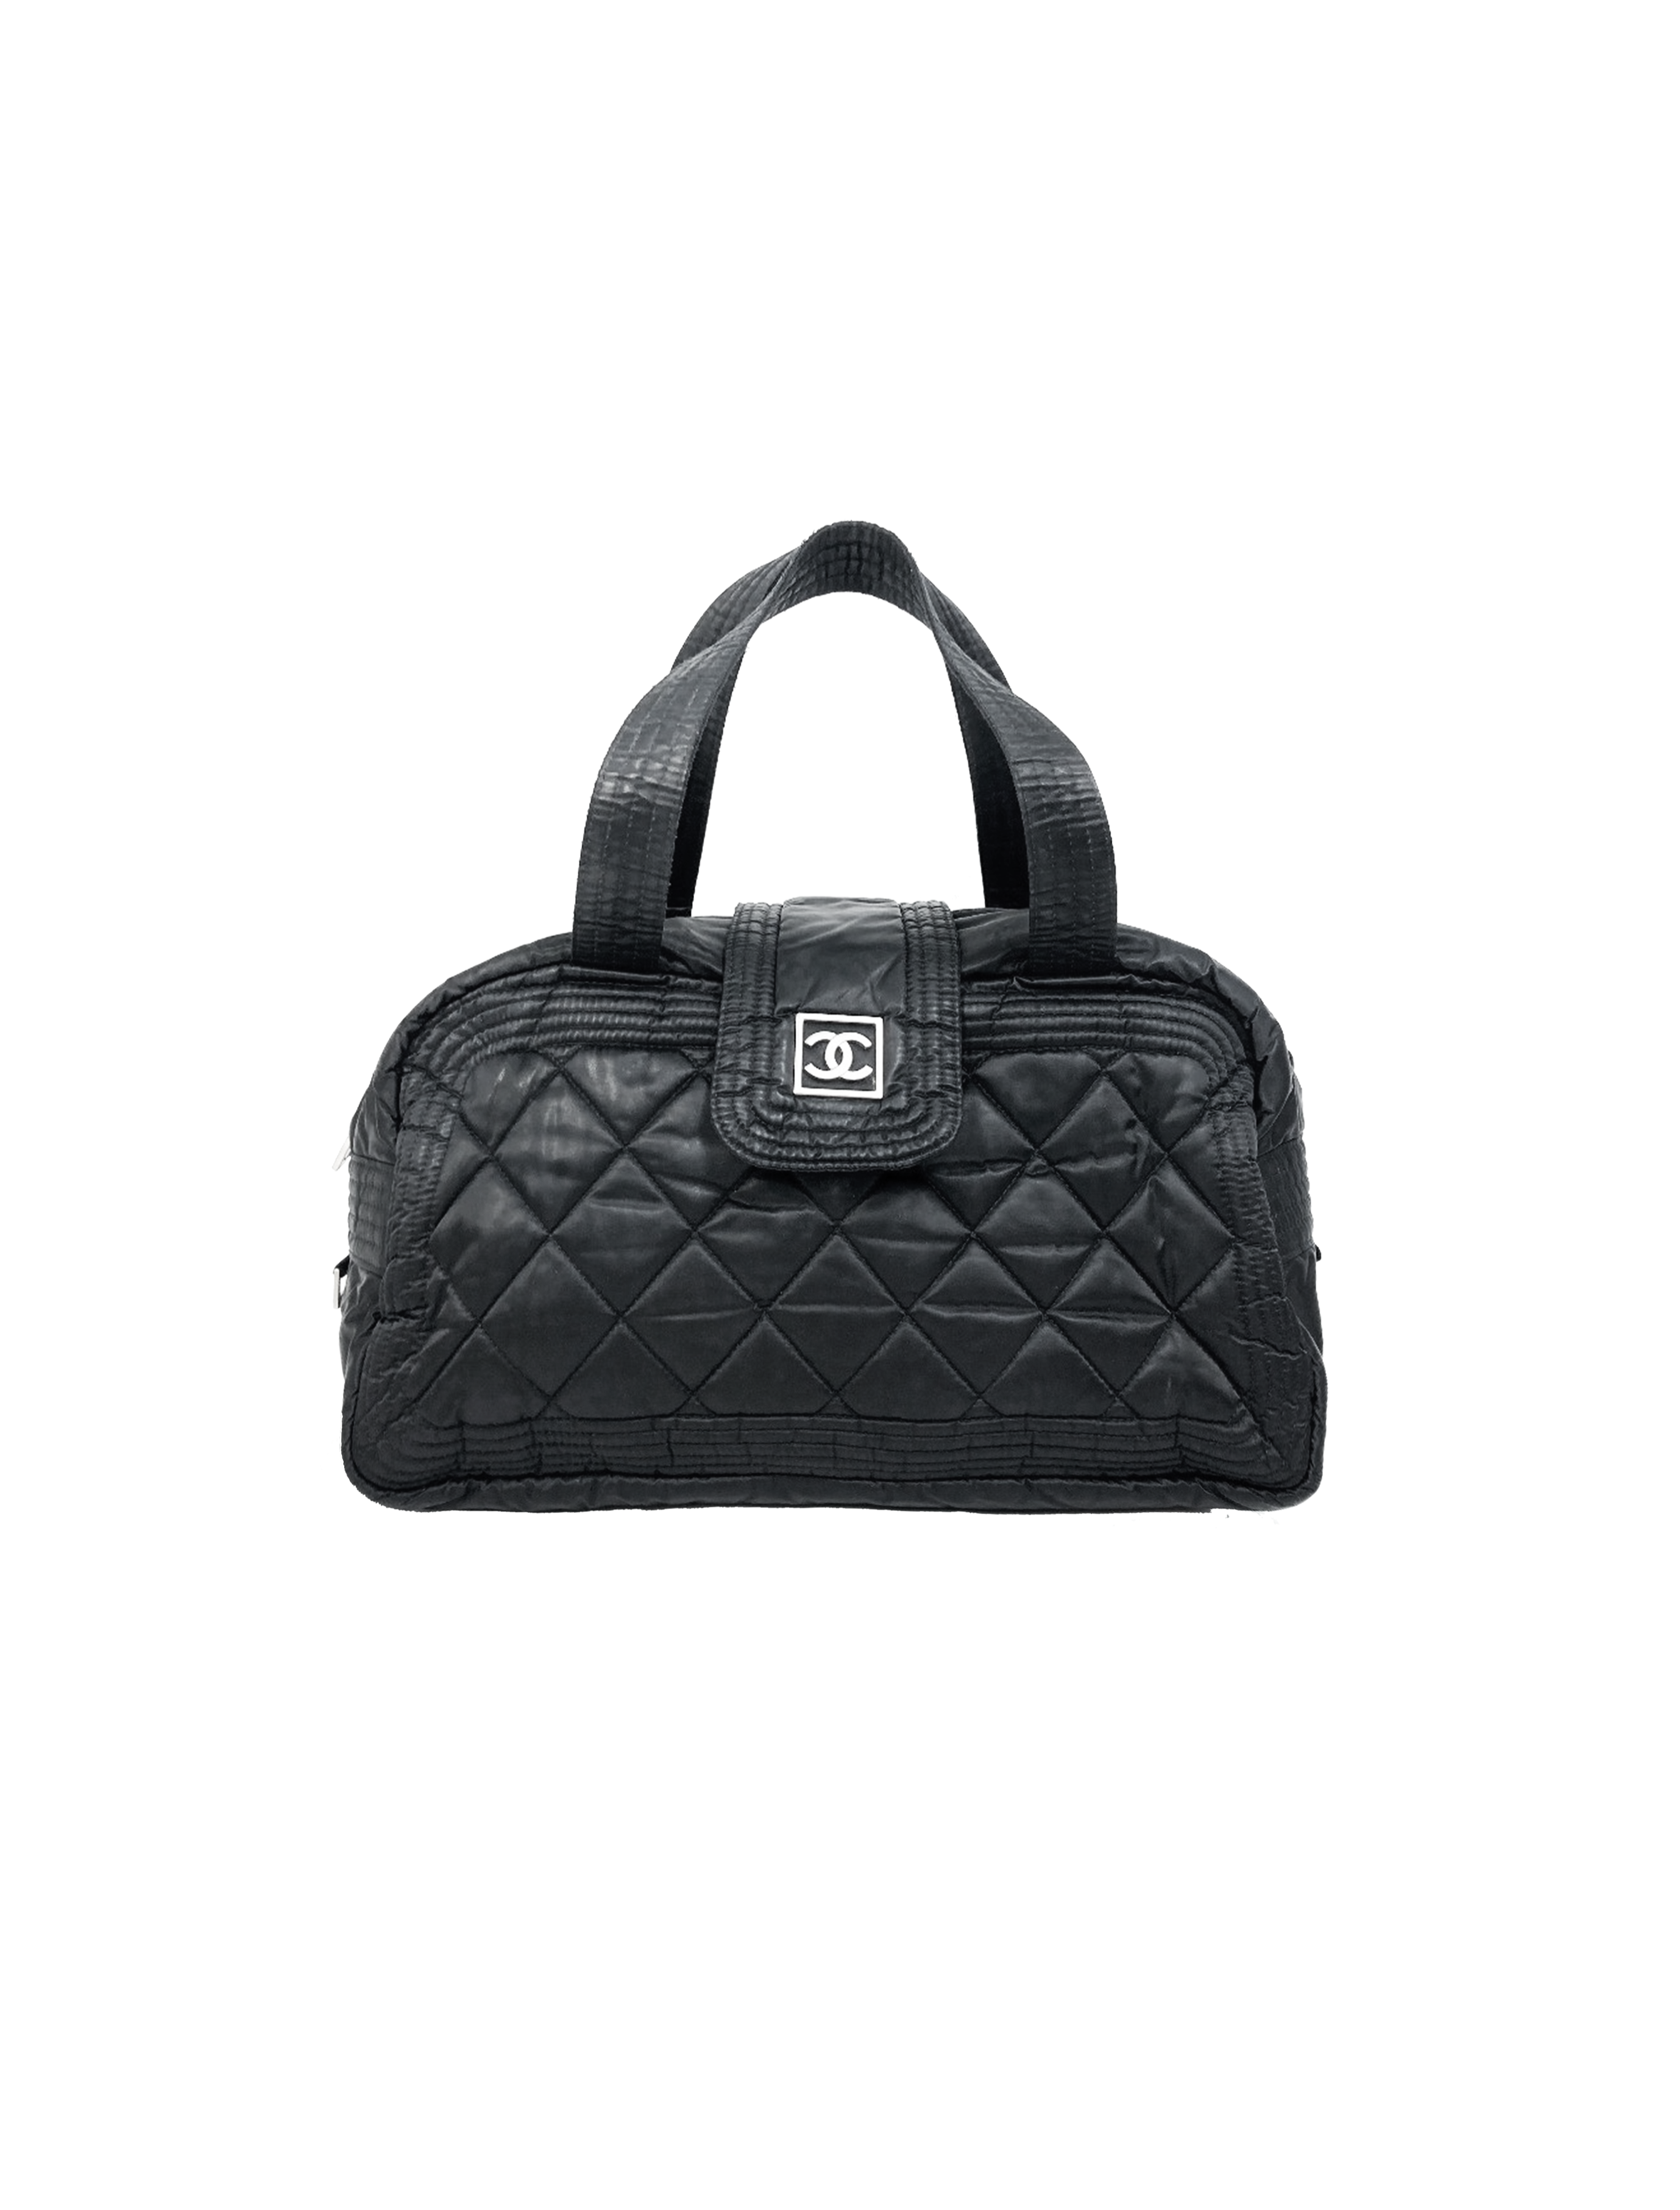 Chanel 2005 Sports Black Nylon Tote Bag · INTO